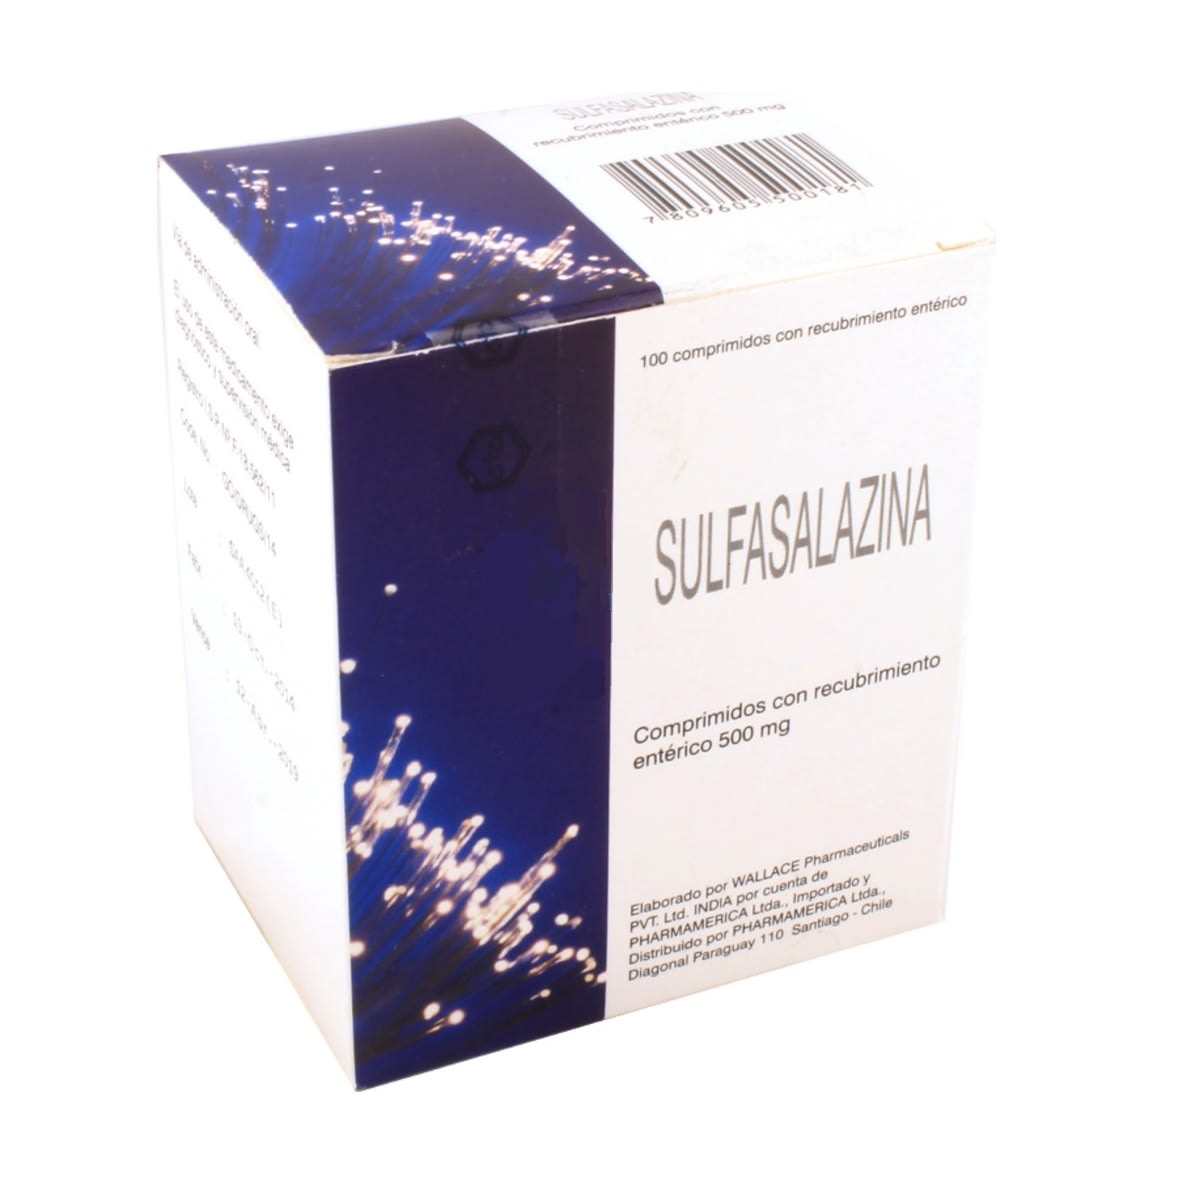 Sulfasalazina Comprimidos con Recubrimiento Entérico 500mg